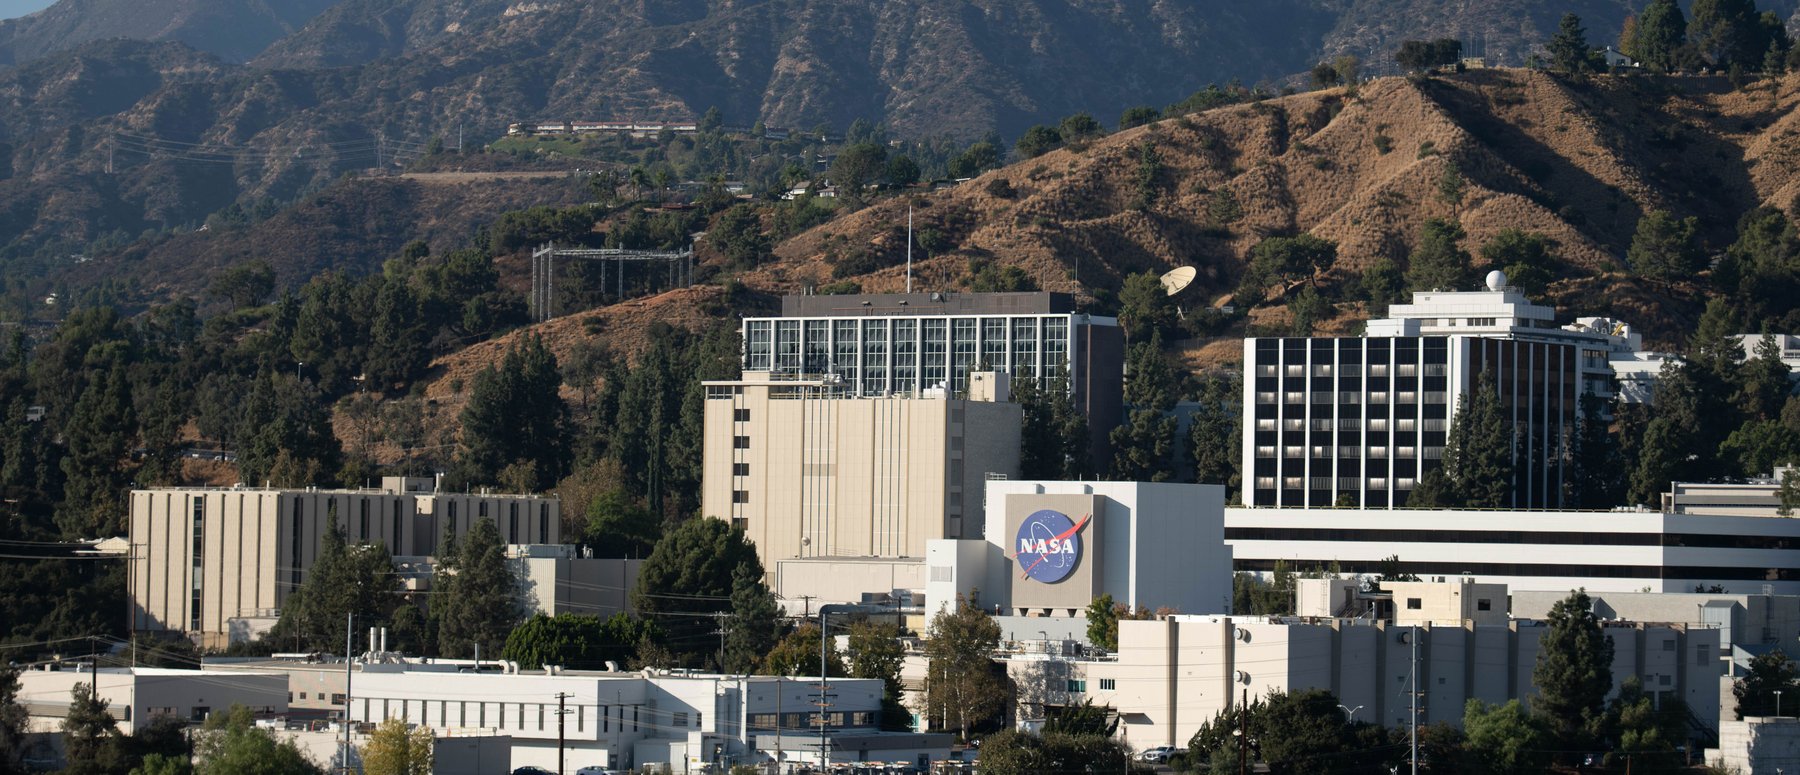 JPL Campus